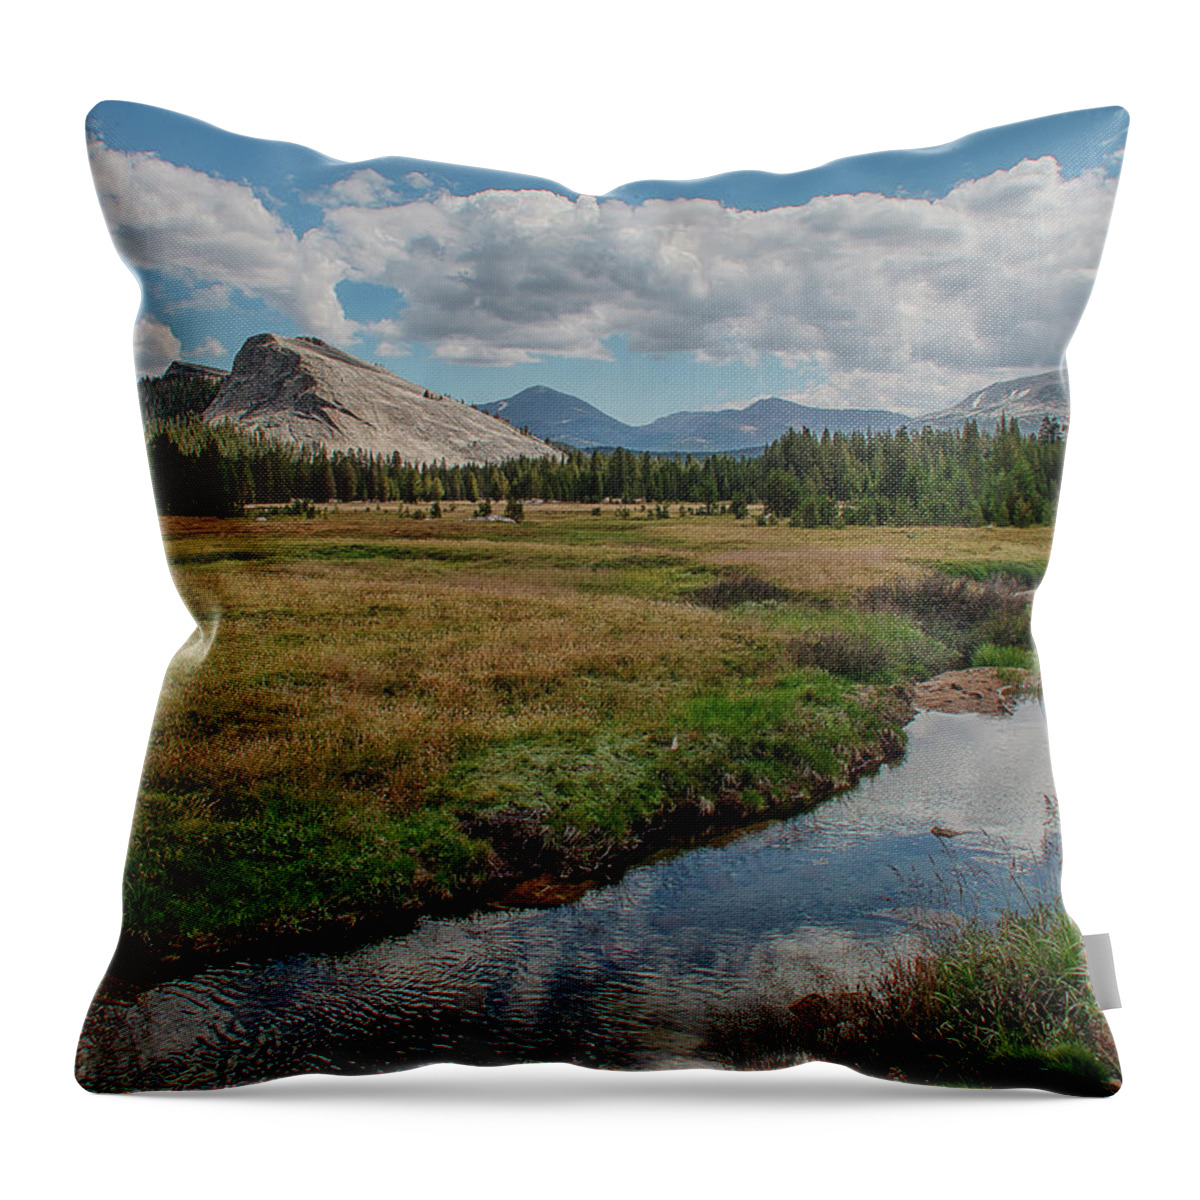 2018 Calendar Throw Pillow featuring the photograph 2018 Yosemite Calendar July by Bill Roberts